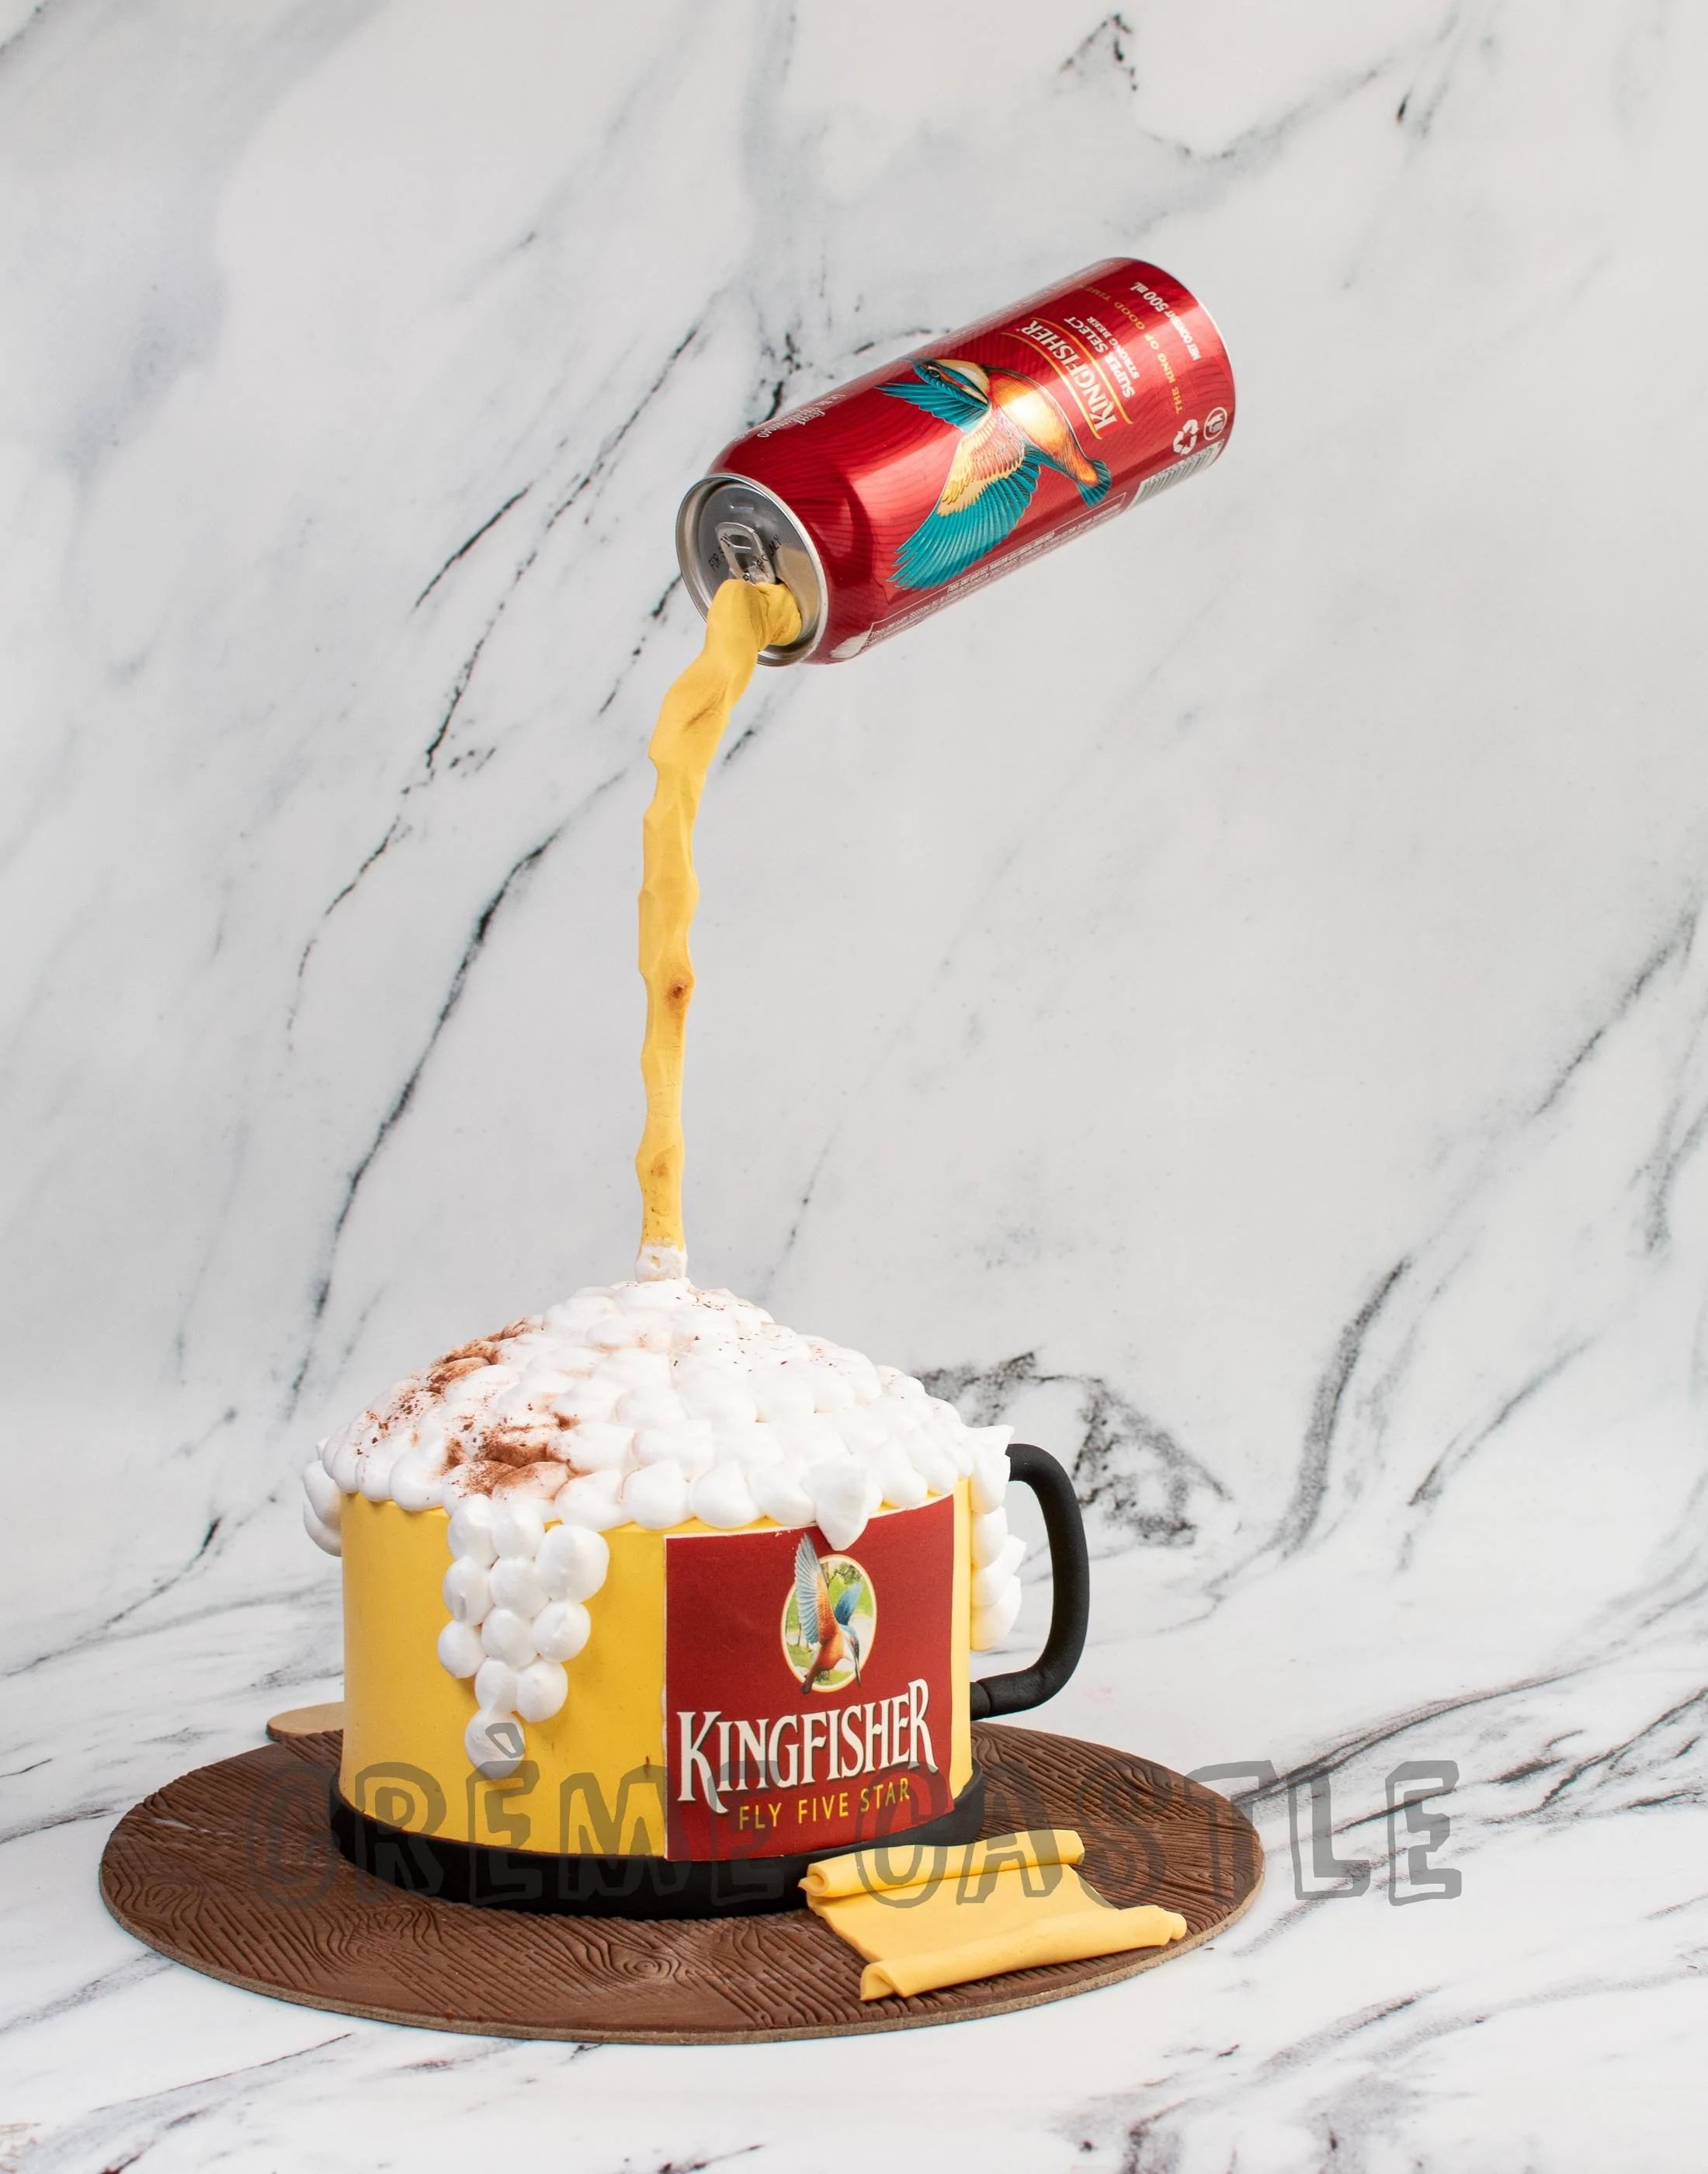 Corona beer cake - Nickiscake